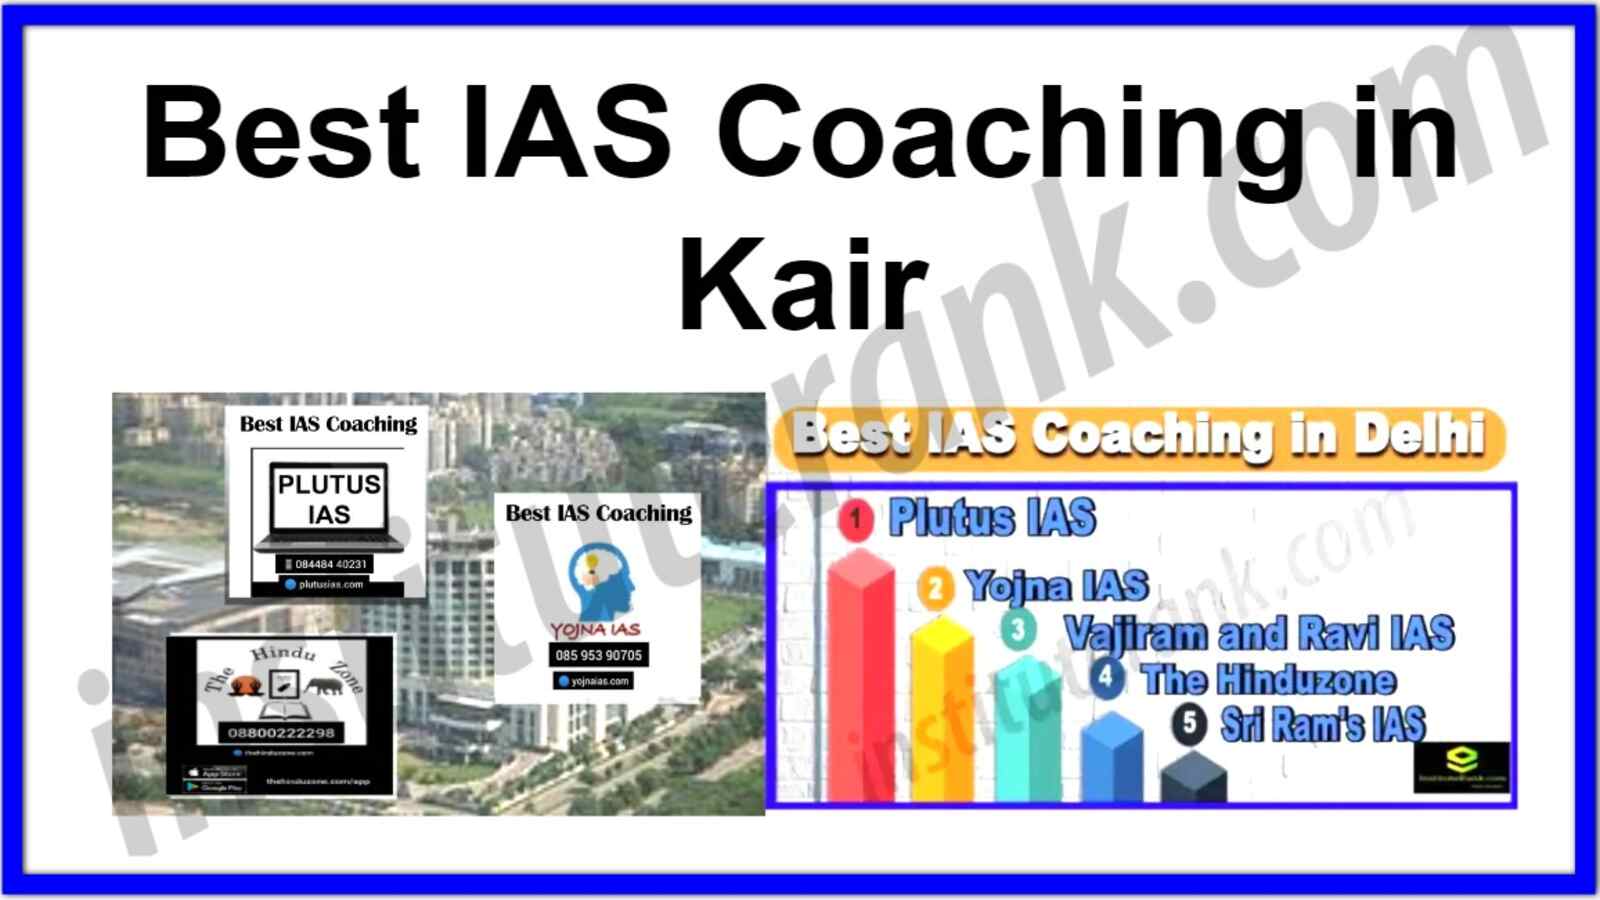 Best IAS Coaching in Kair